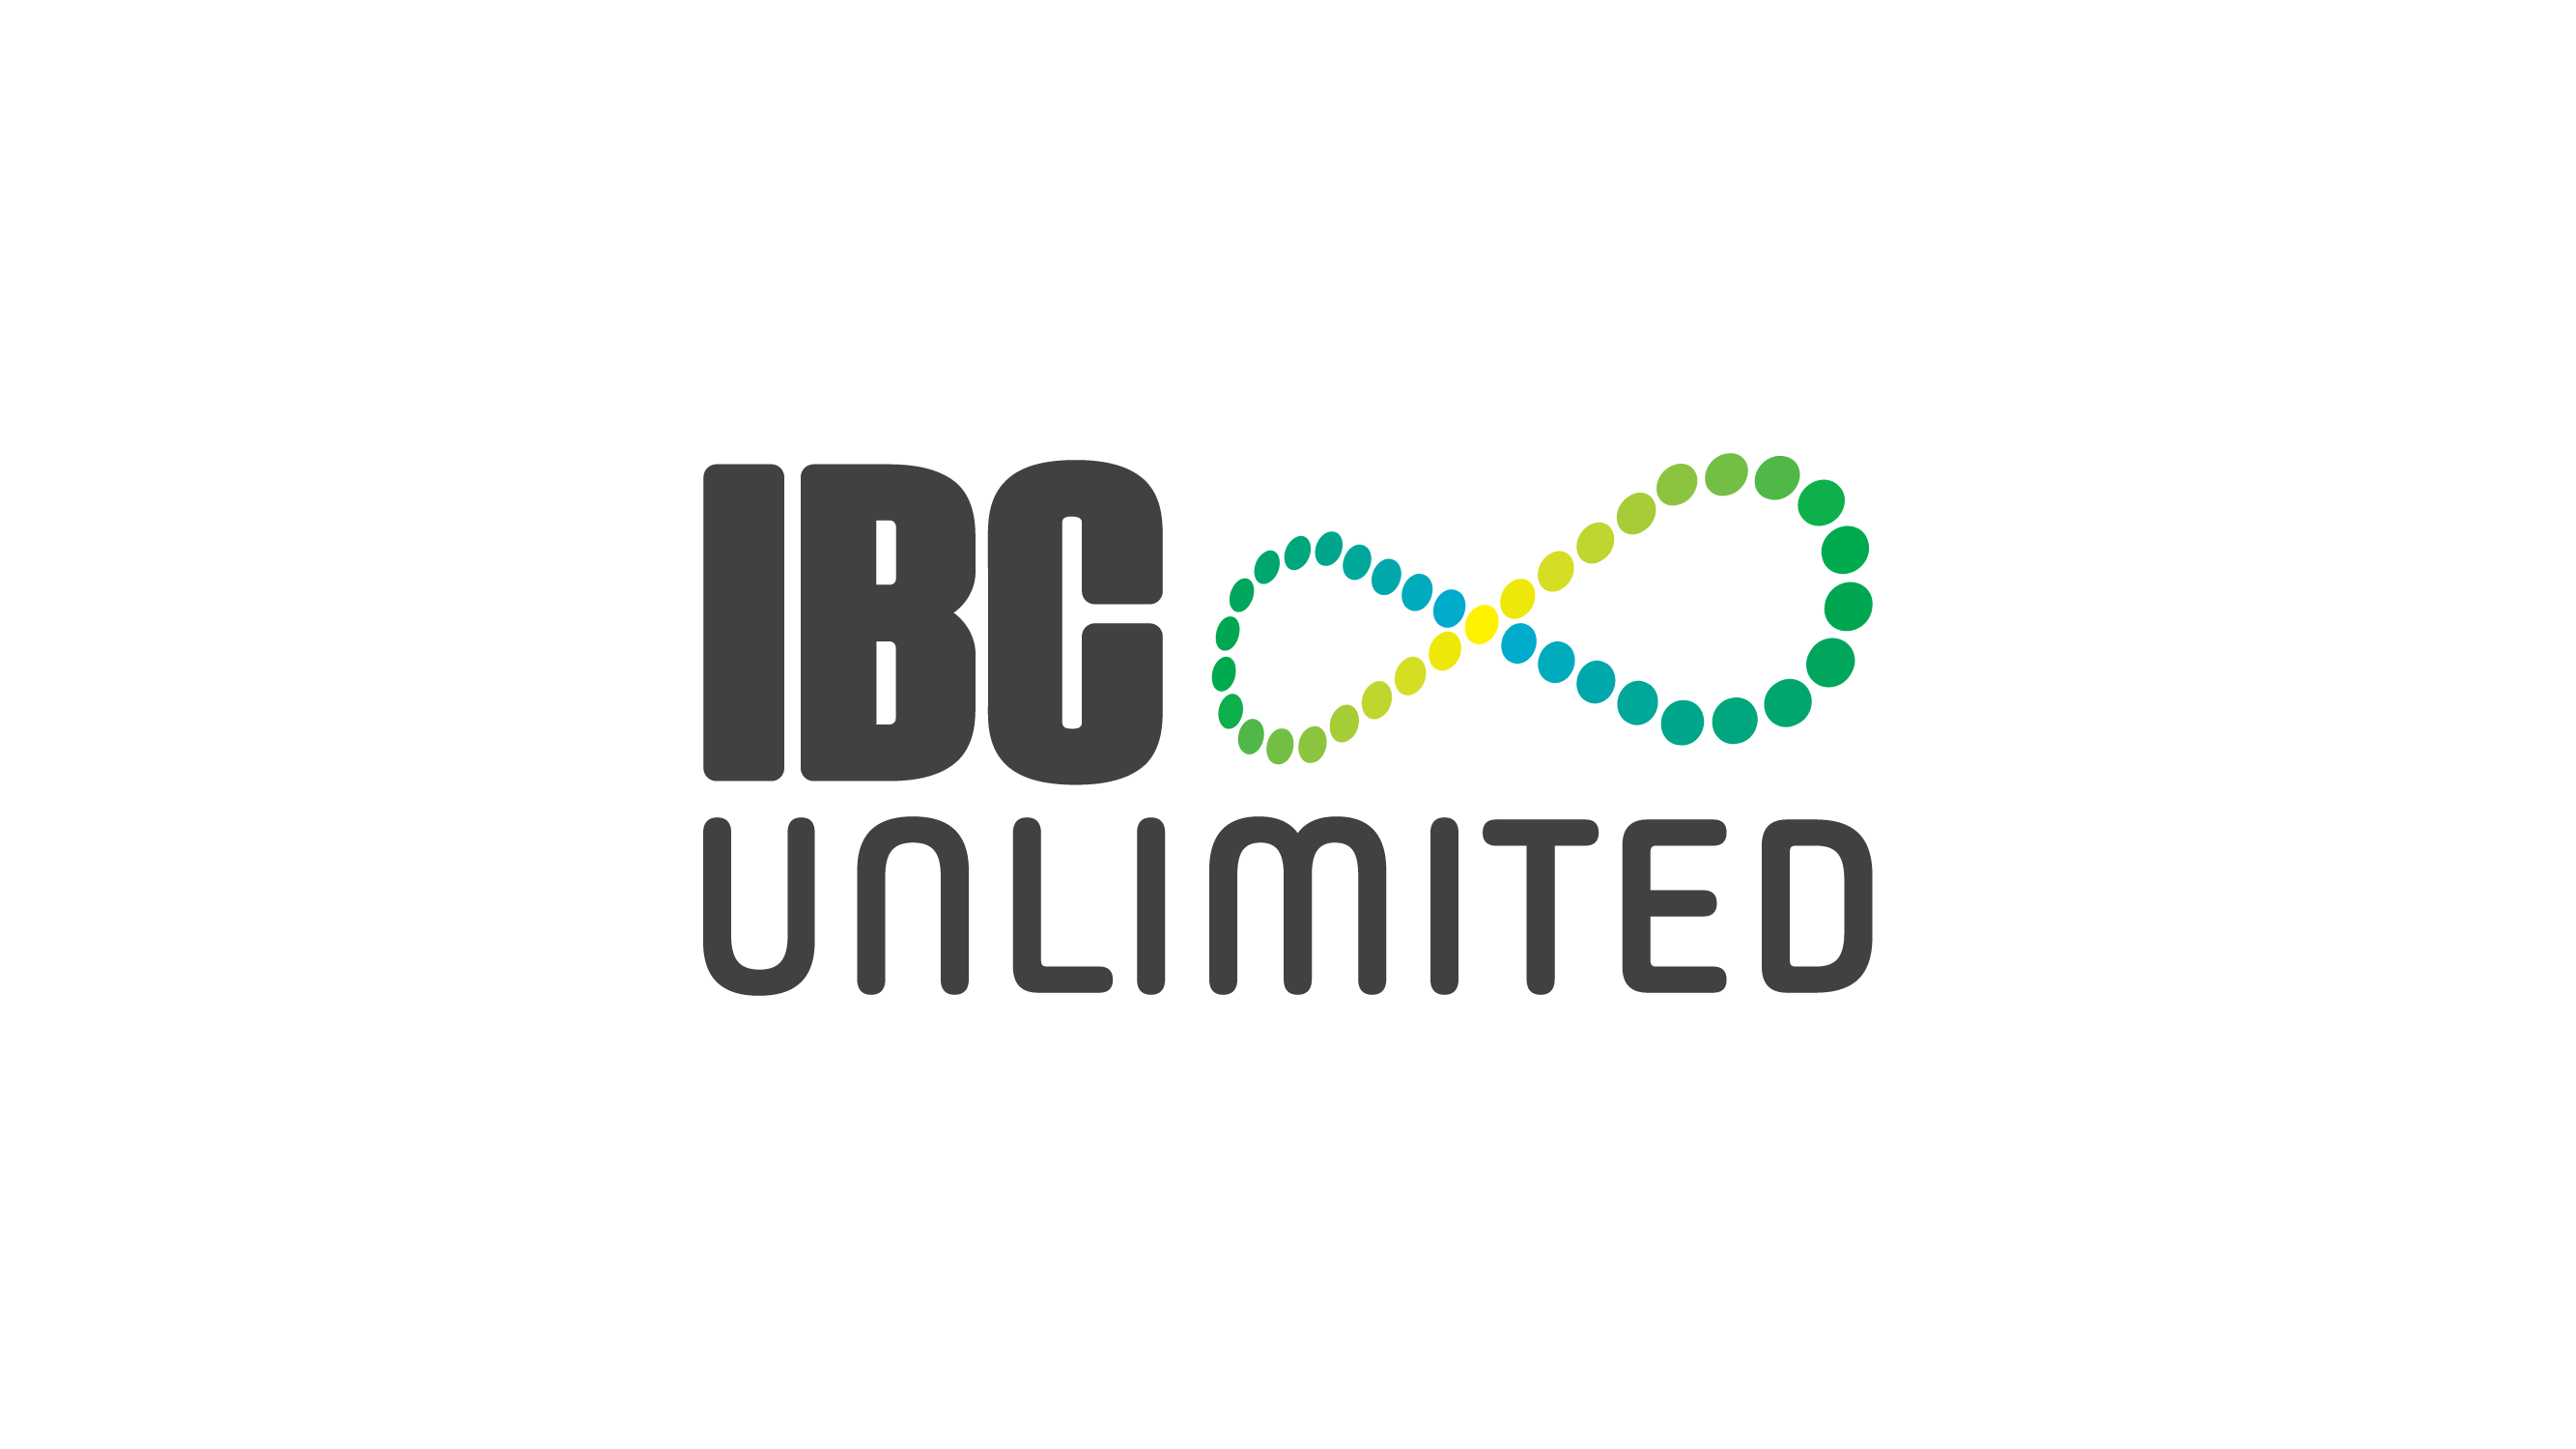 Ibc_unlimited_b